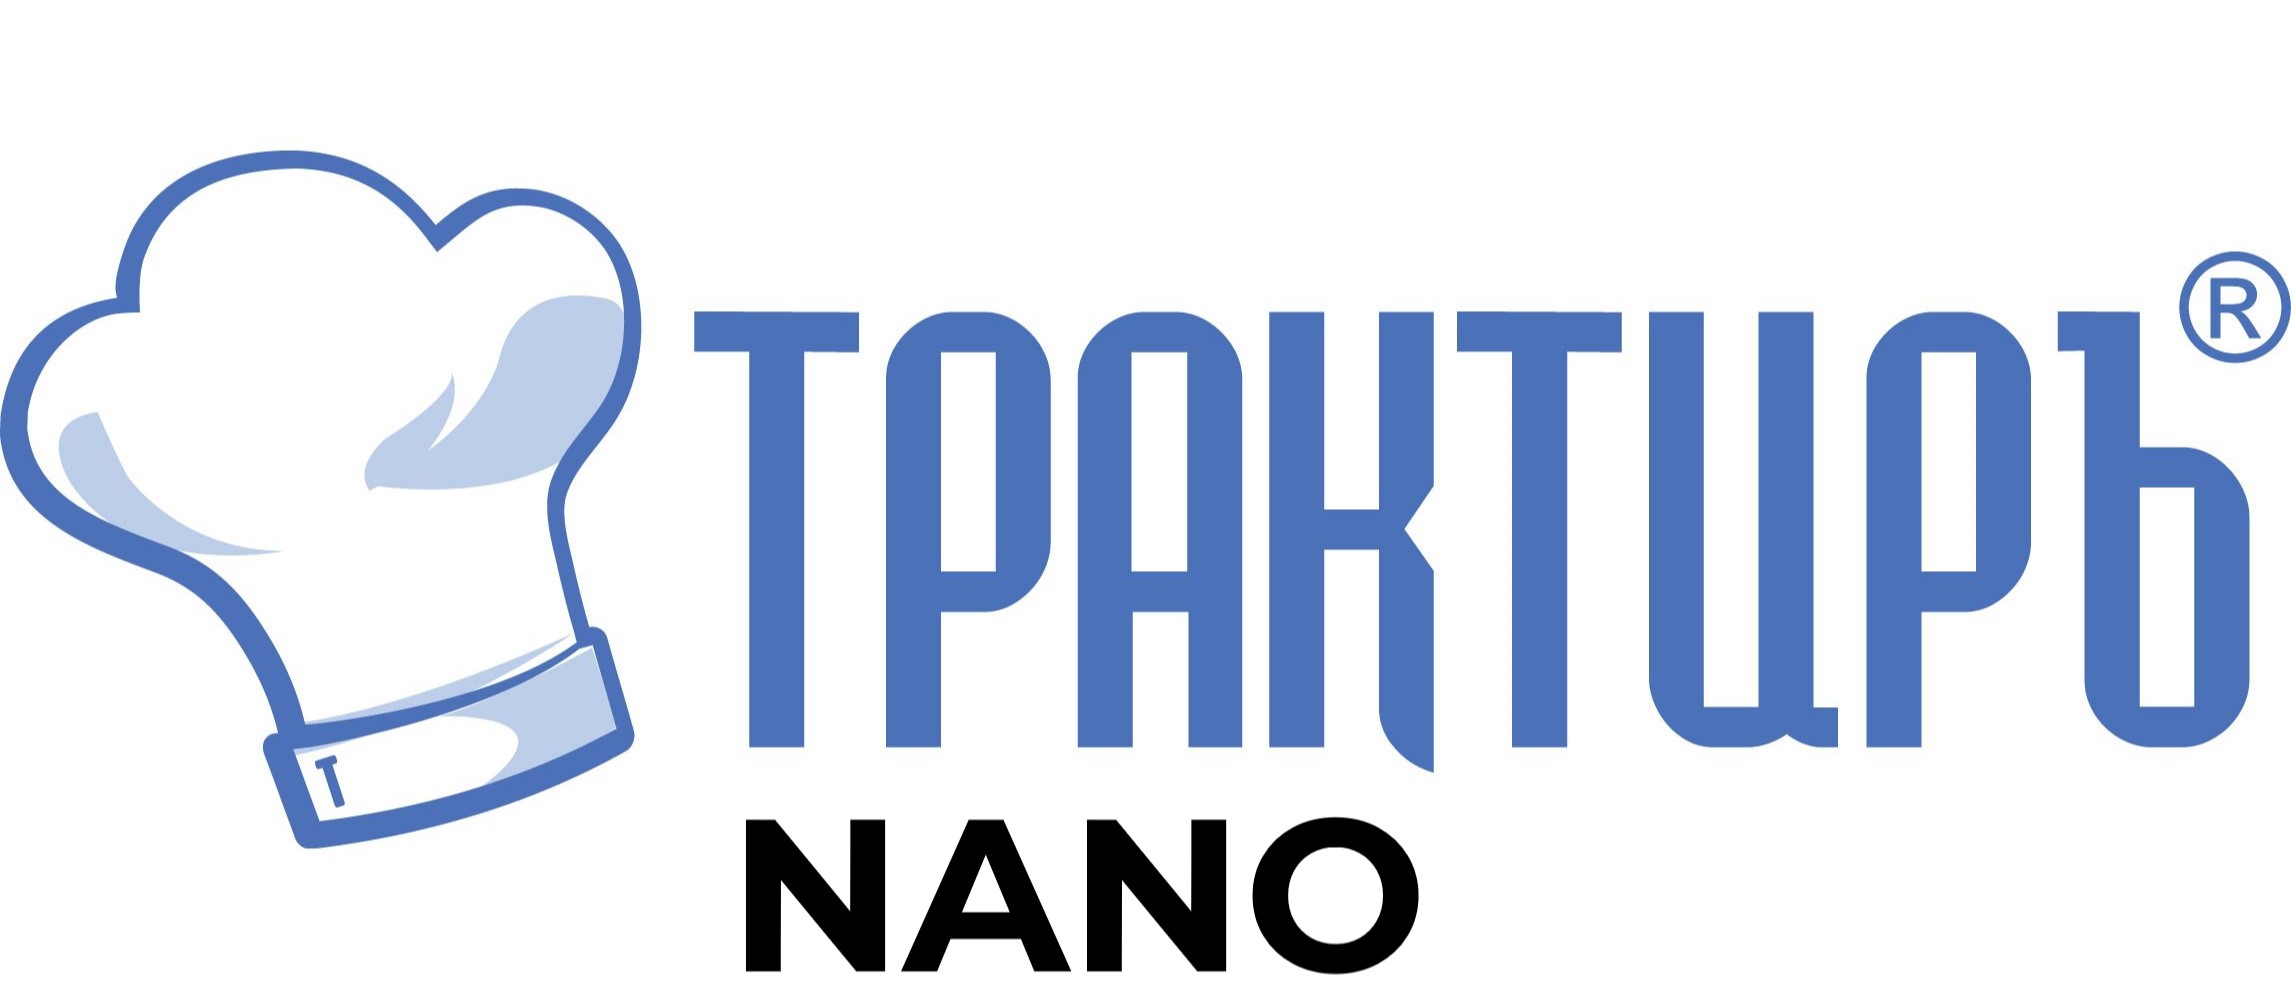 Конфигурация Трактиръ: Nano (Основная поставка) в Екатеринбурге